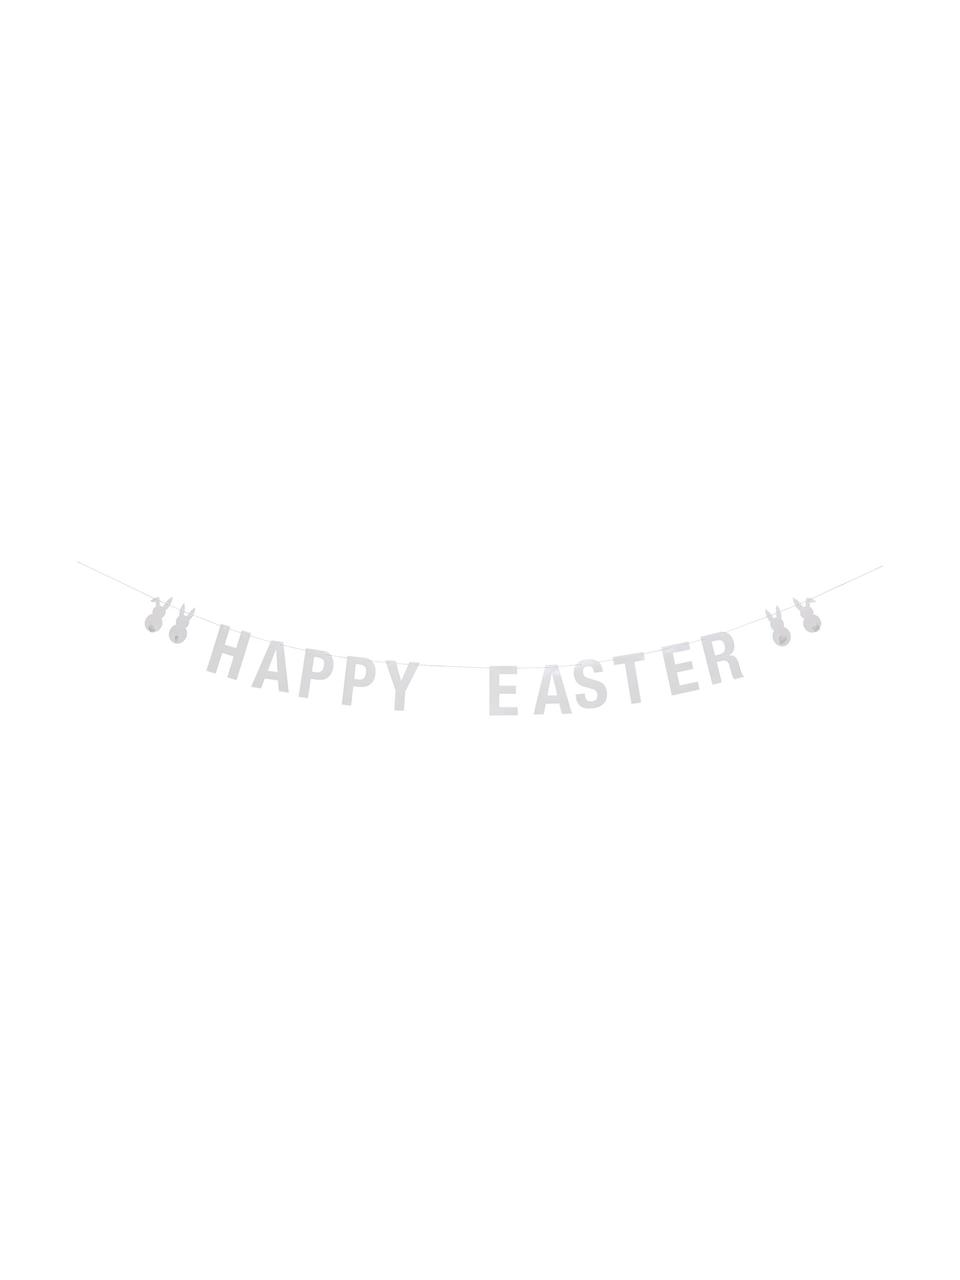 Girlande Happy Easter, Papier, Faden, Weiß, 215 x 12 cm